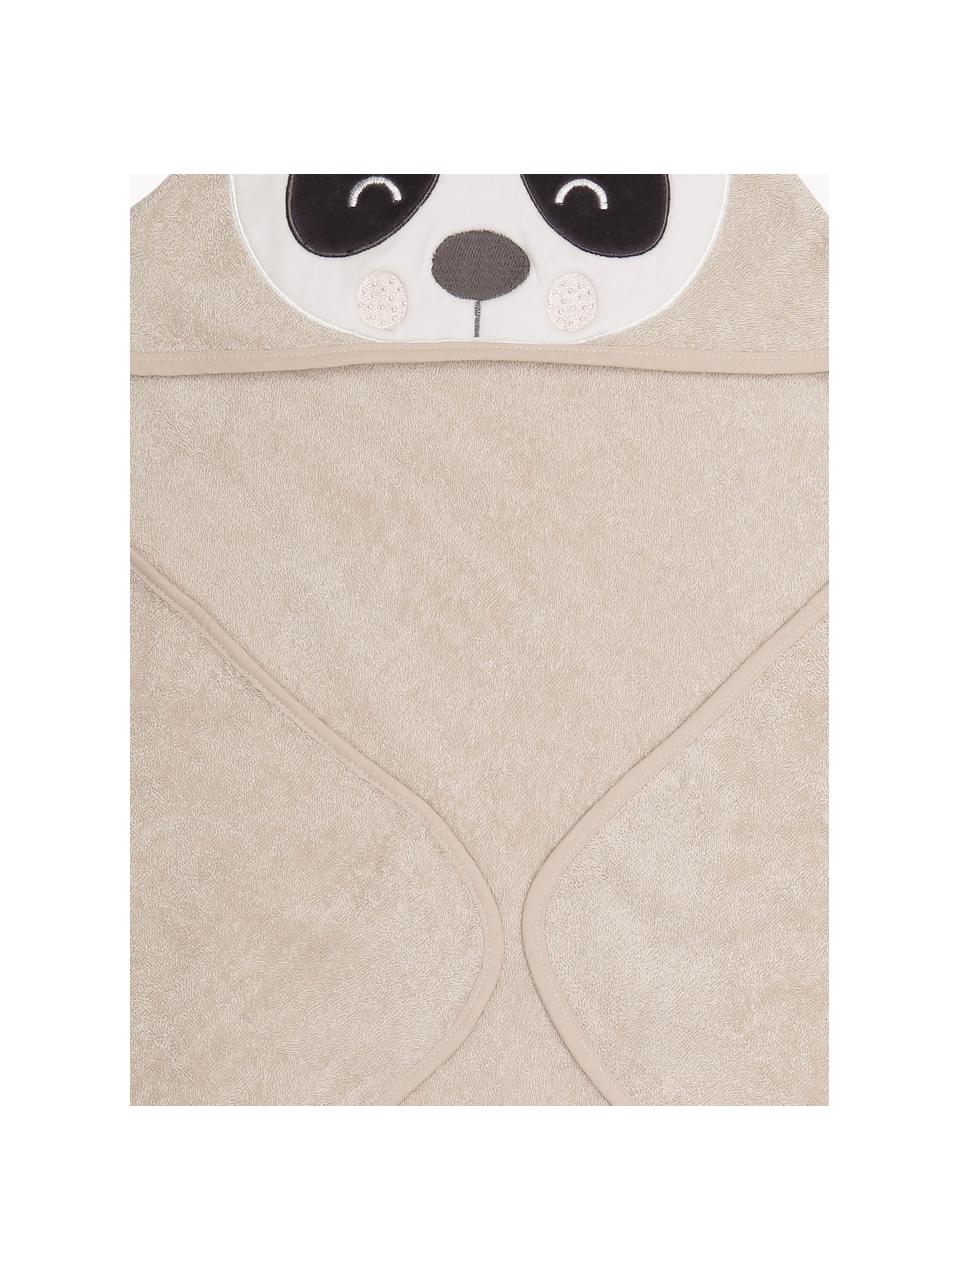 Babyhanddoek Panda Penny van biokatoen, 100% biokatoen, Lichtbeige, wit, antraciet, B 80 x L 80 cm